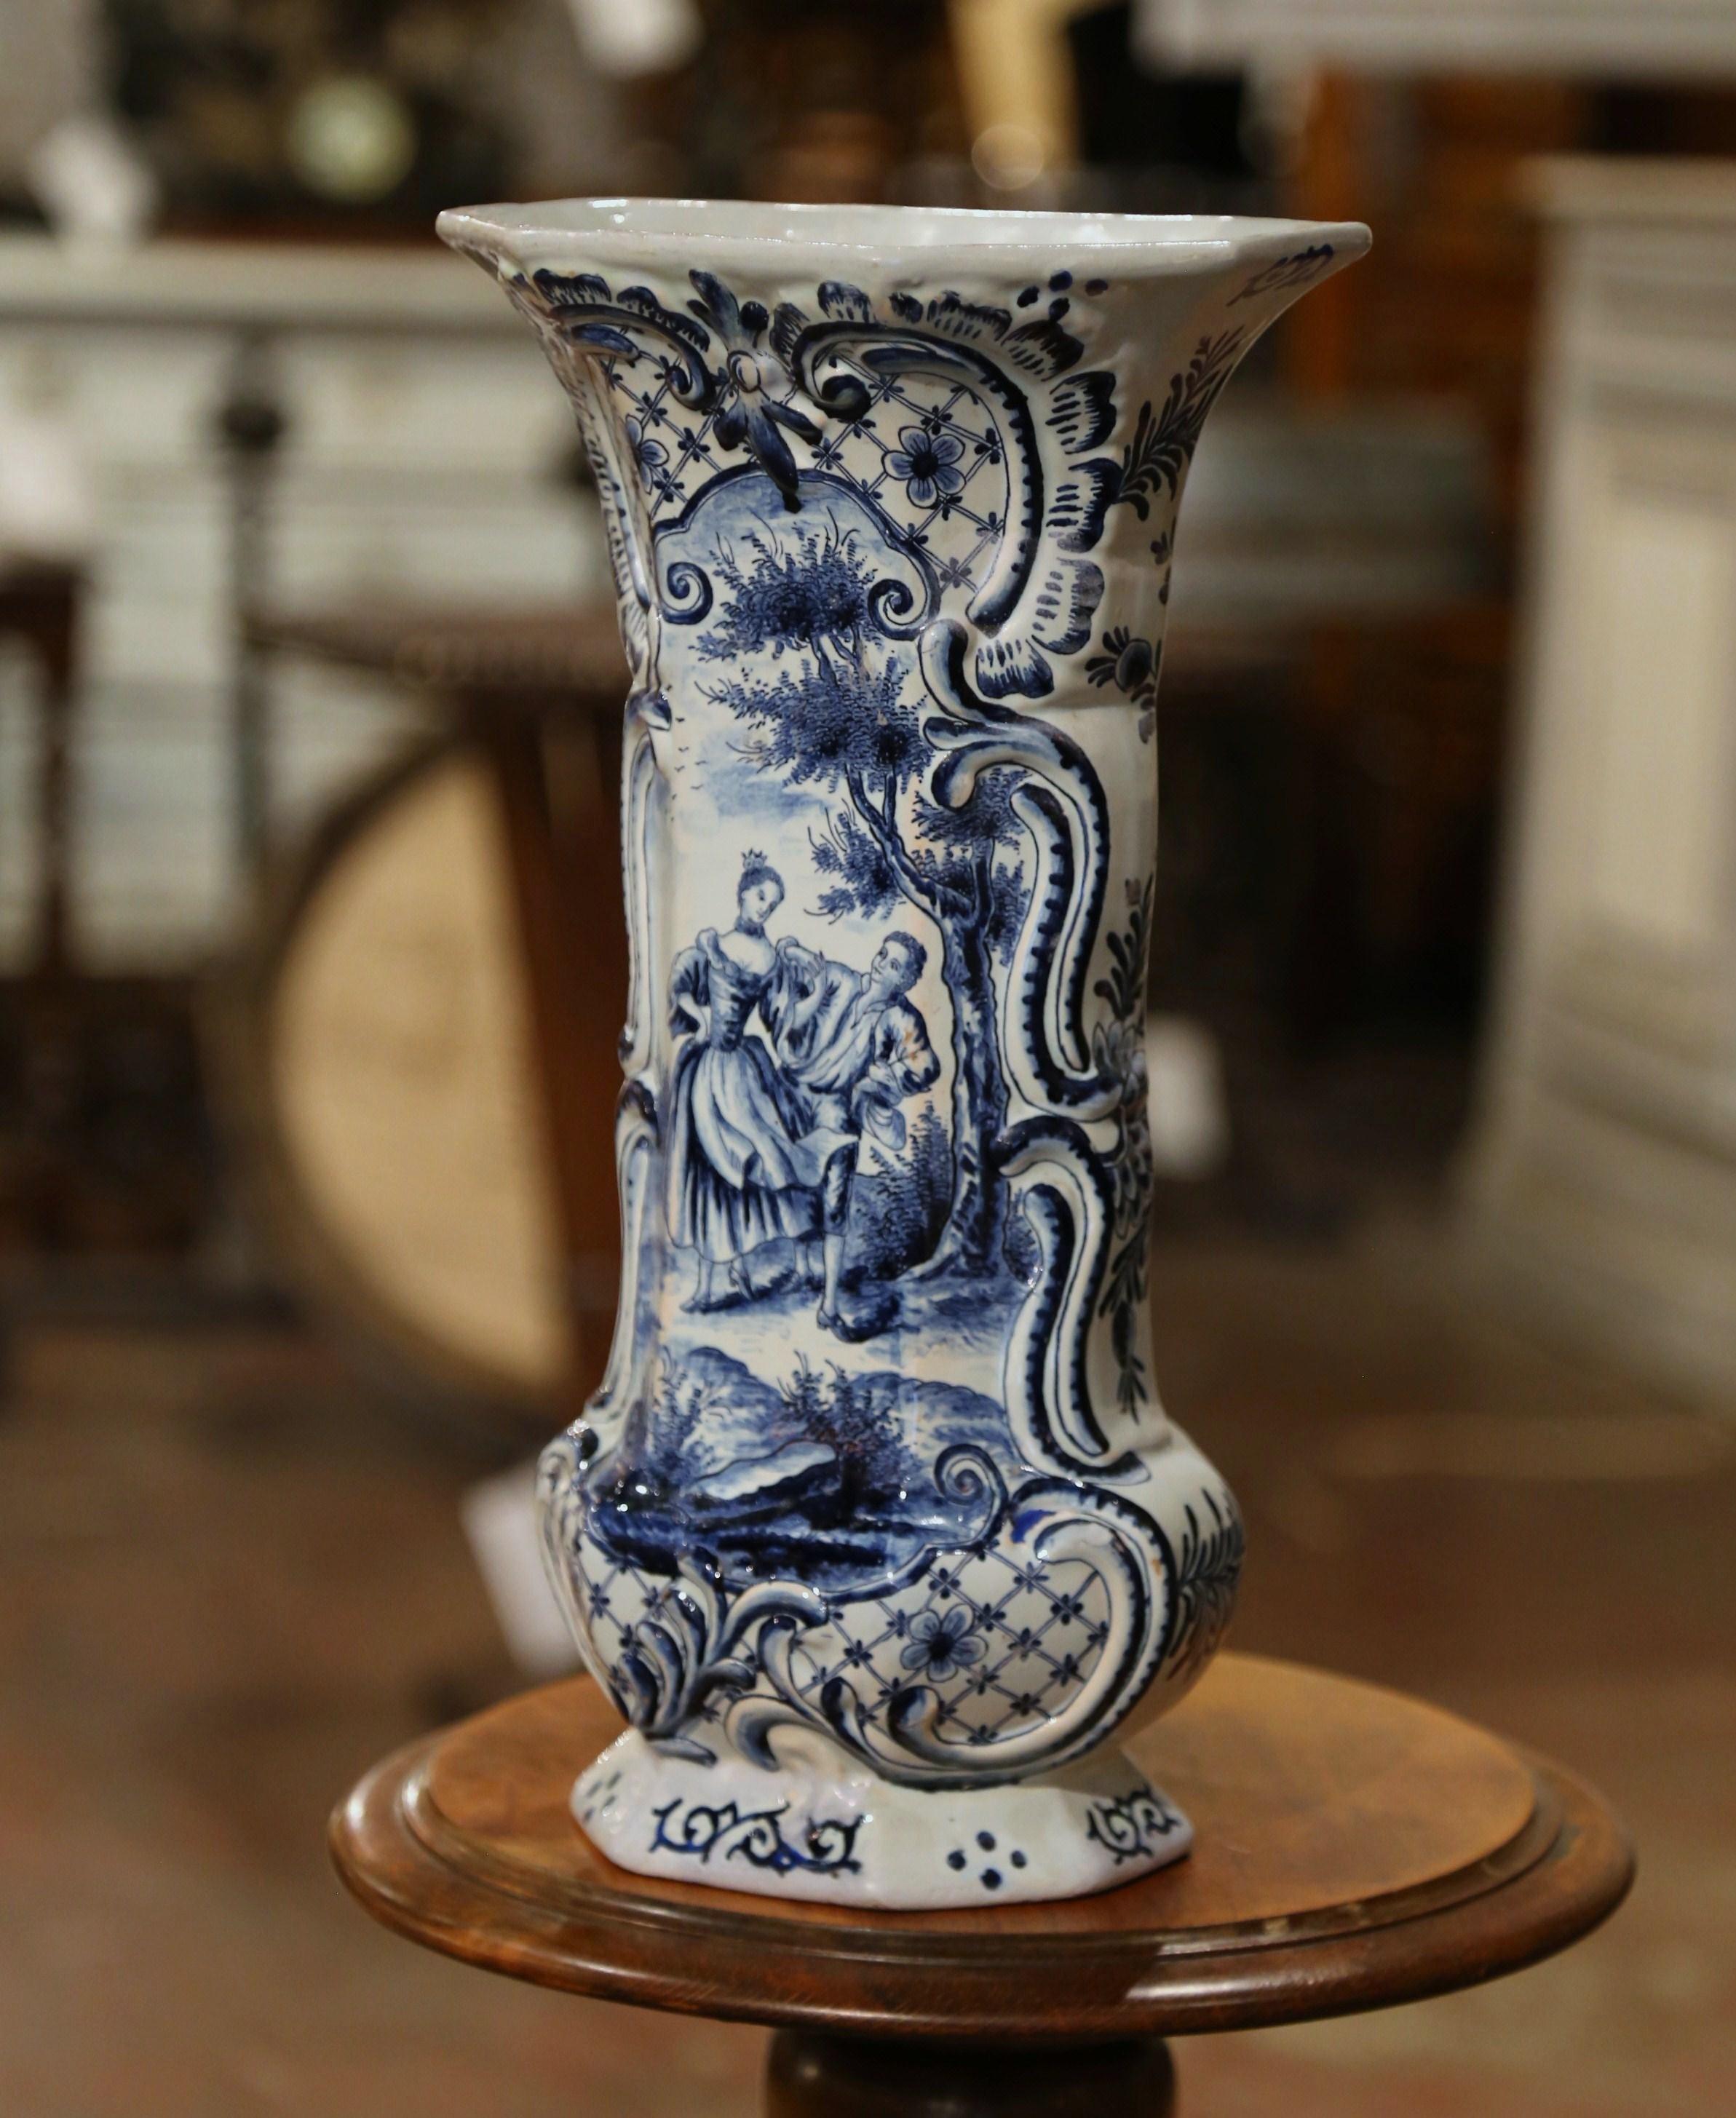 Cet important vase ancien a été fabriqué en France, vers 1780. De forme octogonale, avec un corps à godrons et un col haut, cet élégant potiche présente un médaillon peint à la main représentant une scène de cour en plein air dans la palette